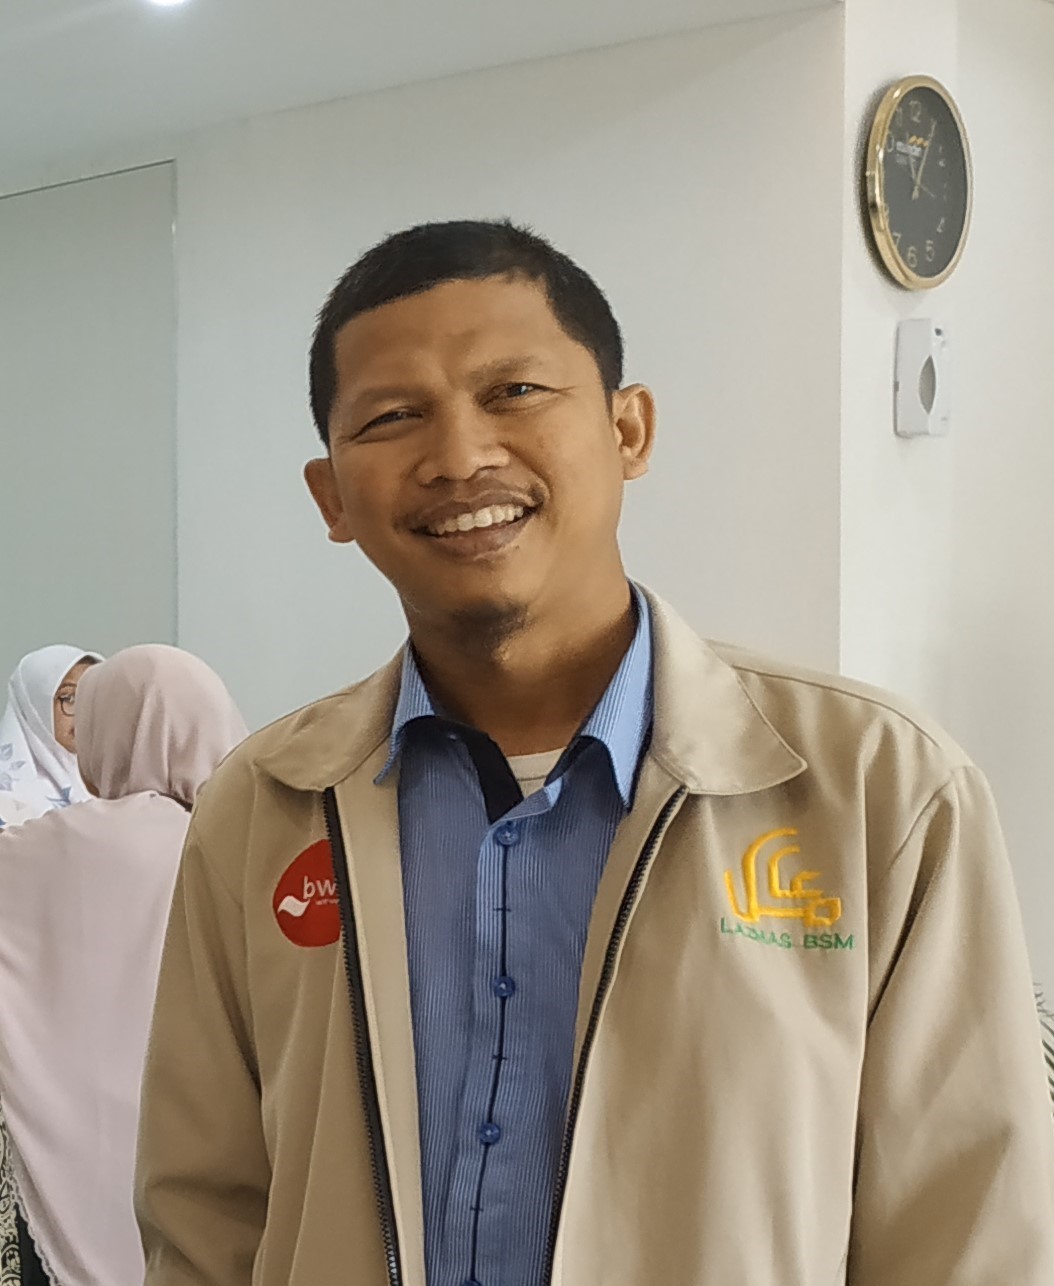 Islah Milono - Ketum PW.IRM Kalimantan Tengah 1997-1999 dan Penggiat Sosial filanthropi bekerja di LAZNAS BSMU Jakarta